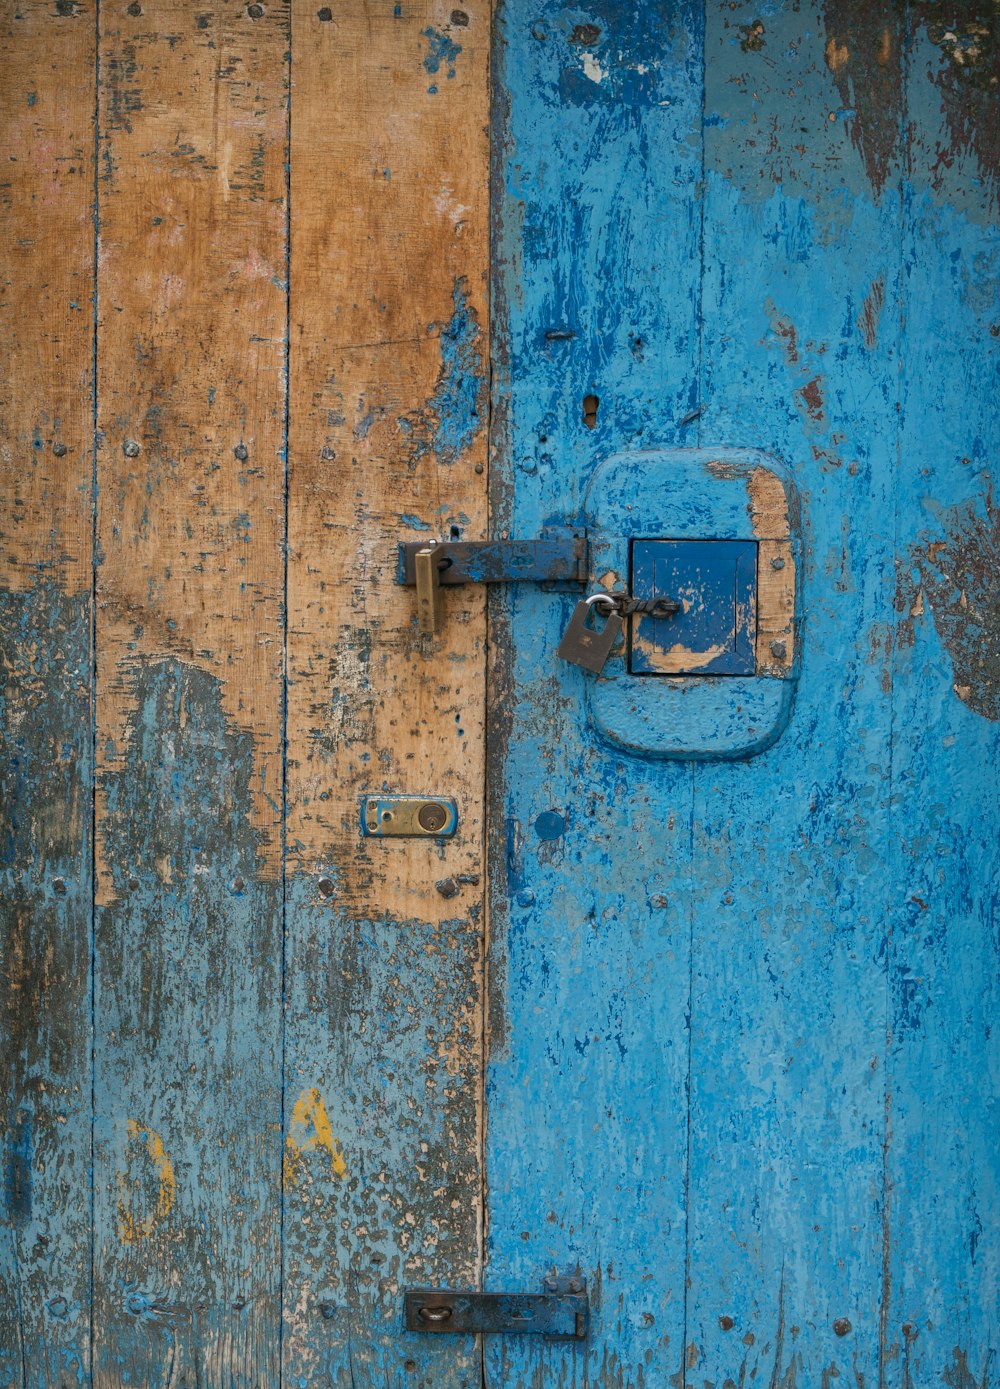 Geschlossene Türen in Blaugrün und Braun